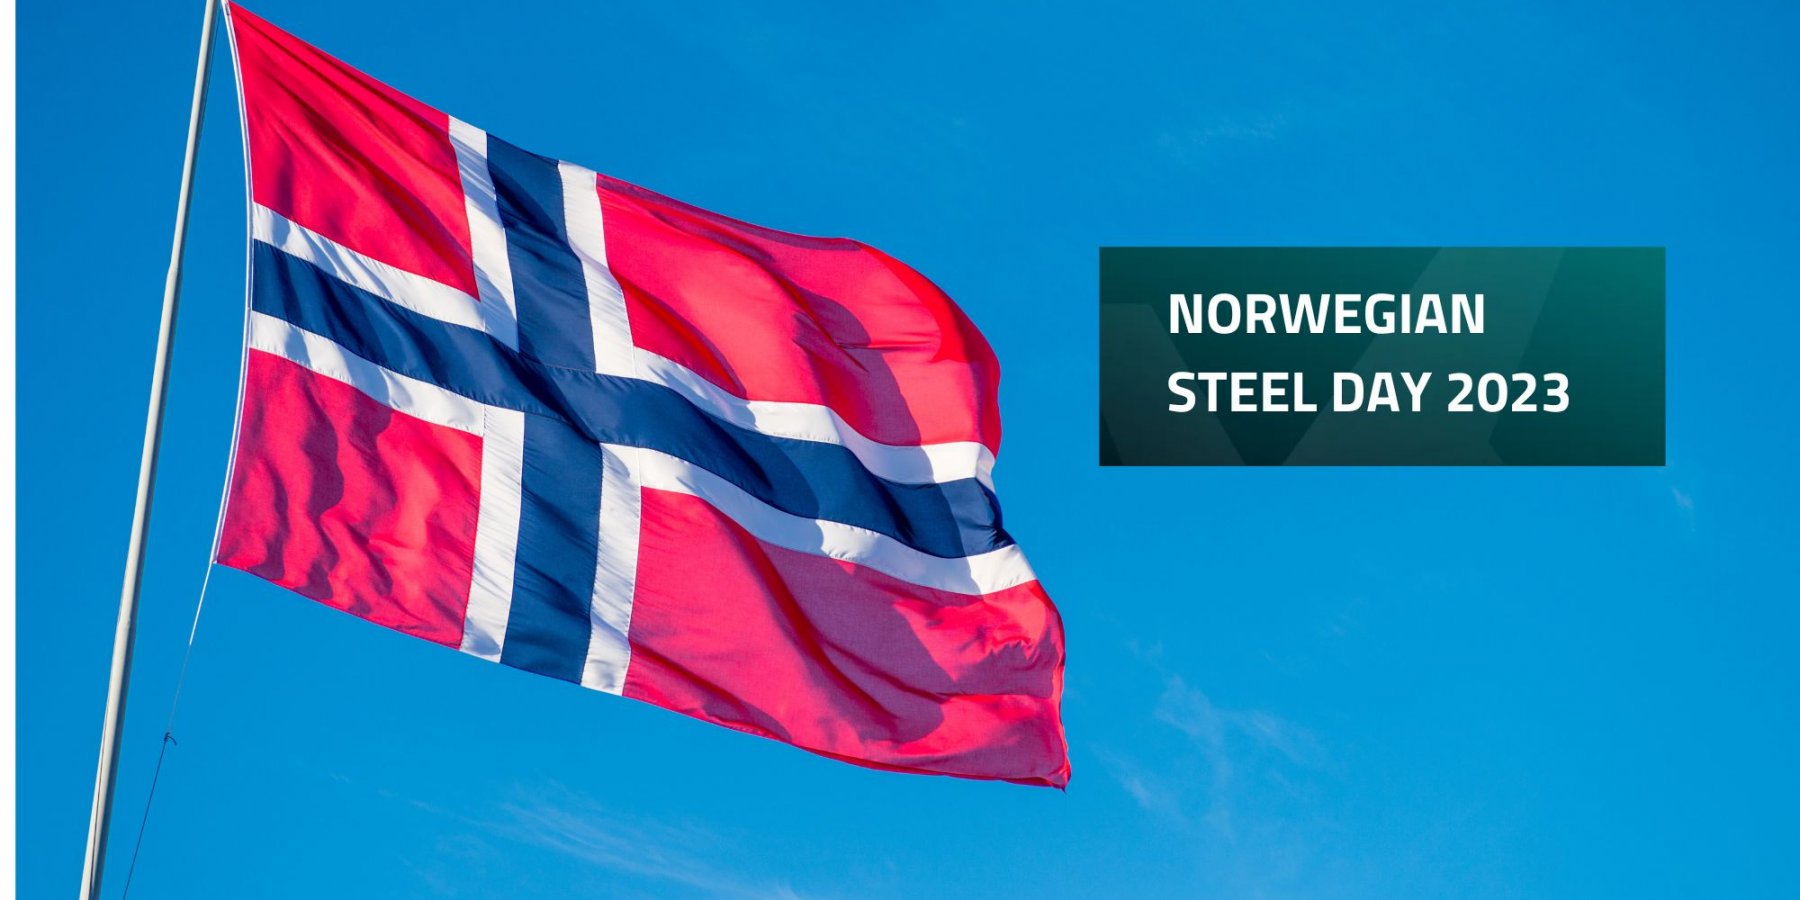 Norwegian Steel Day 2023 